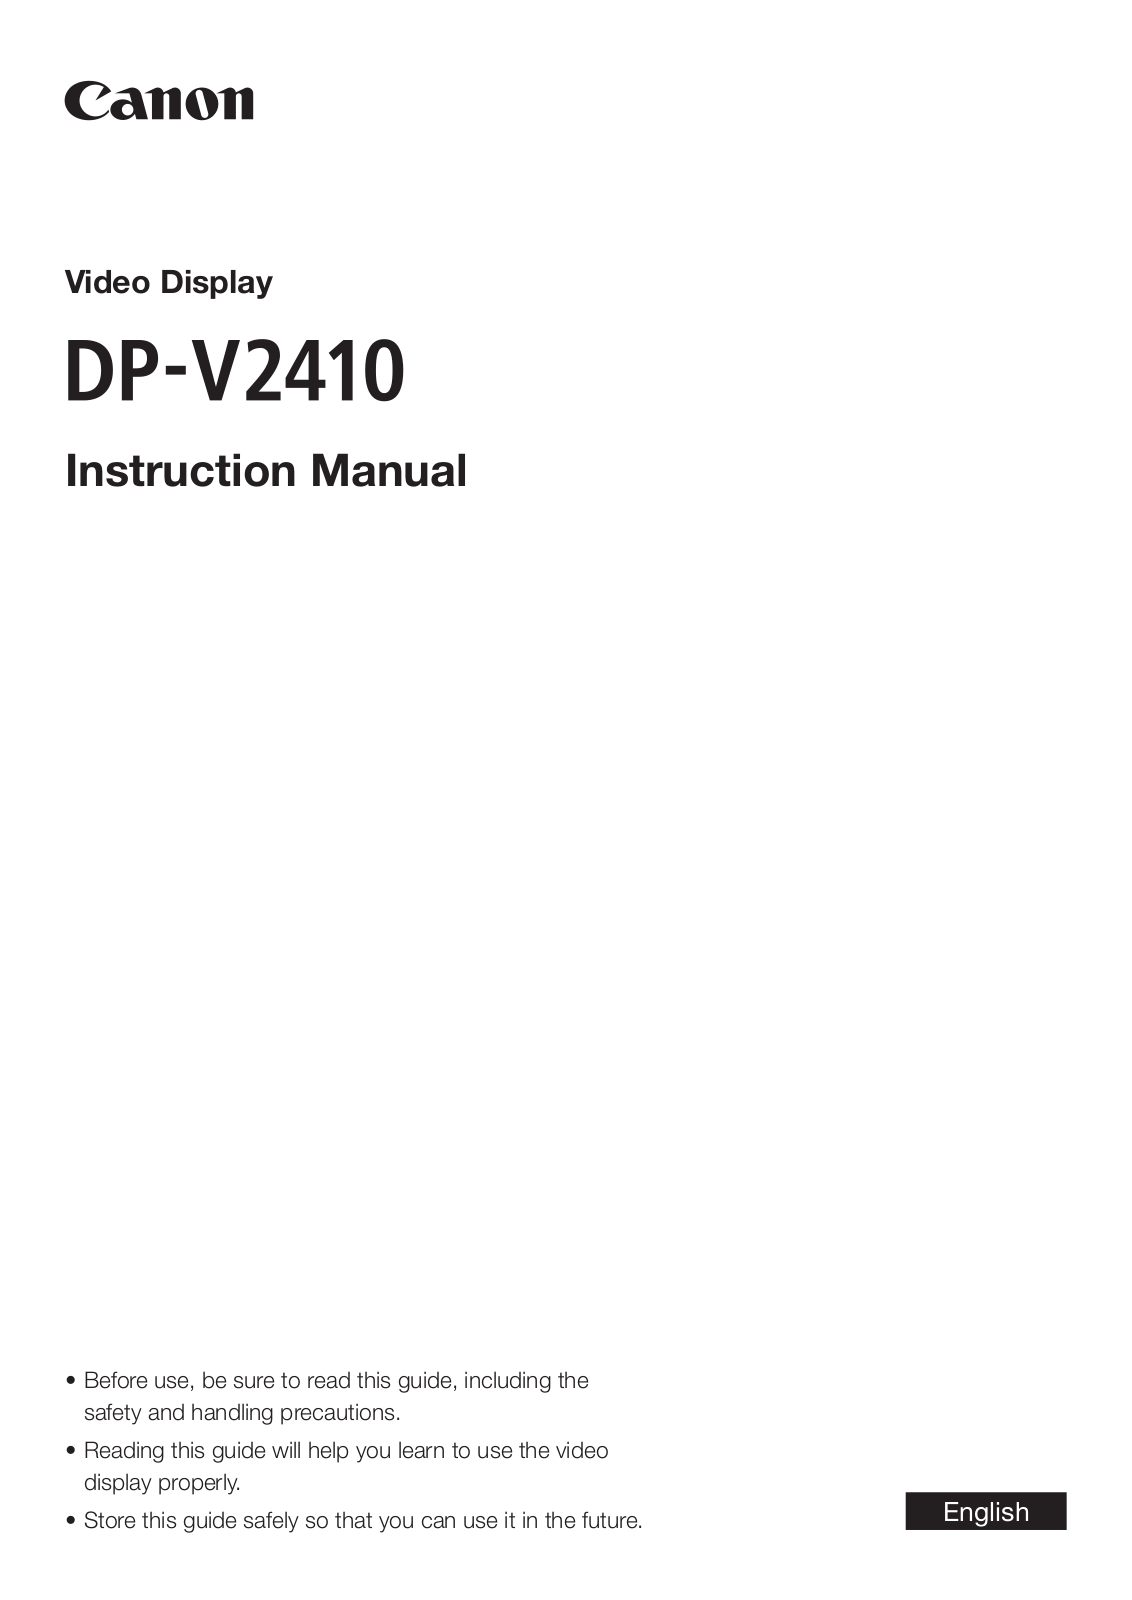 Canon DP-V2410 Instruction Manual